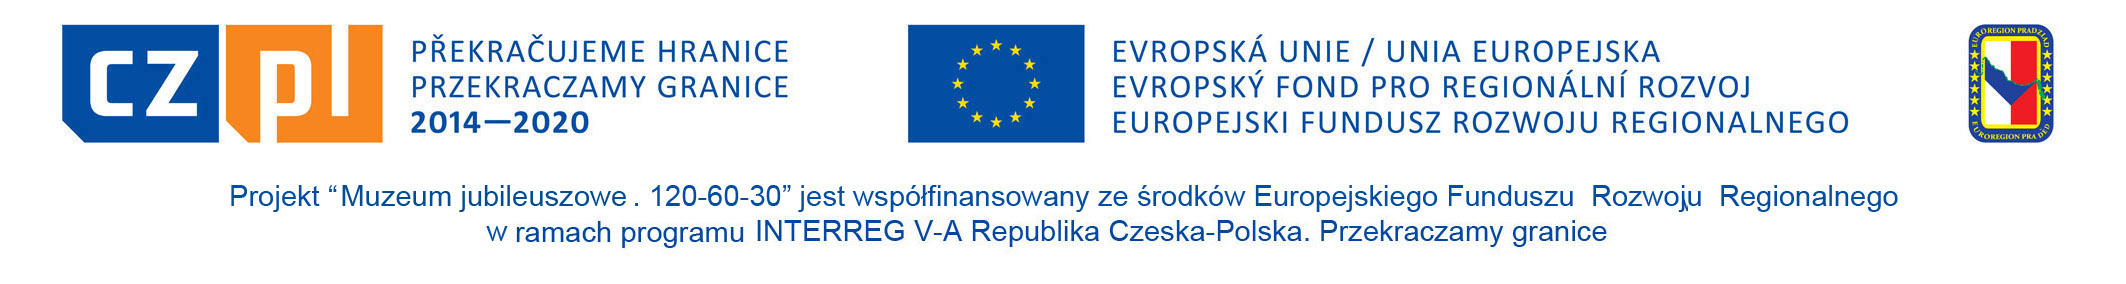 #opisujemy logotyp UE